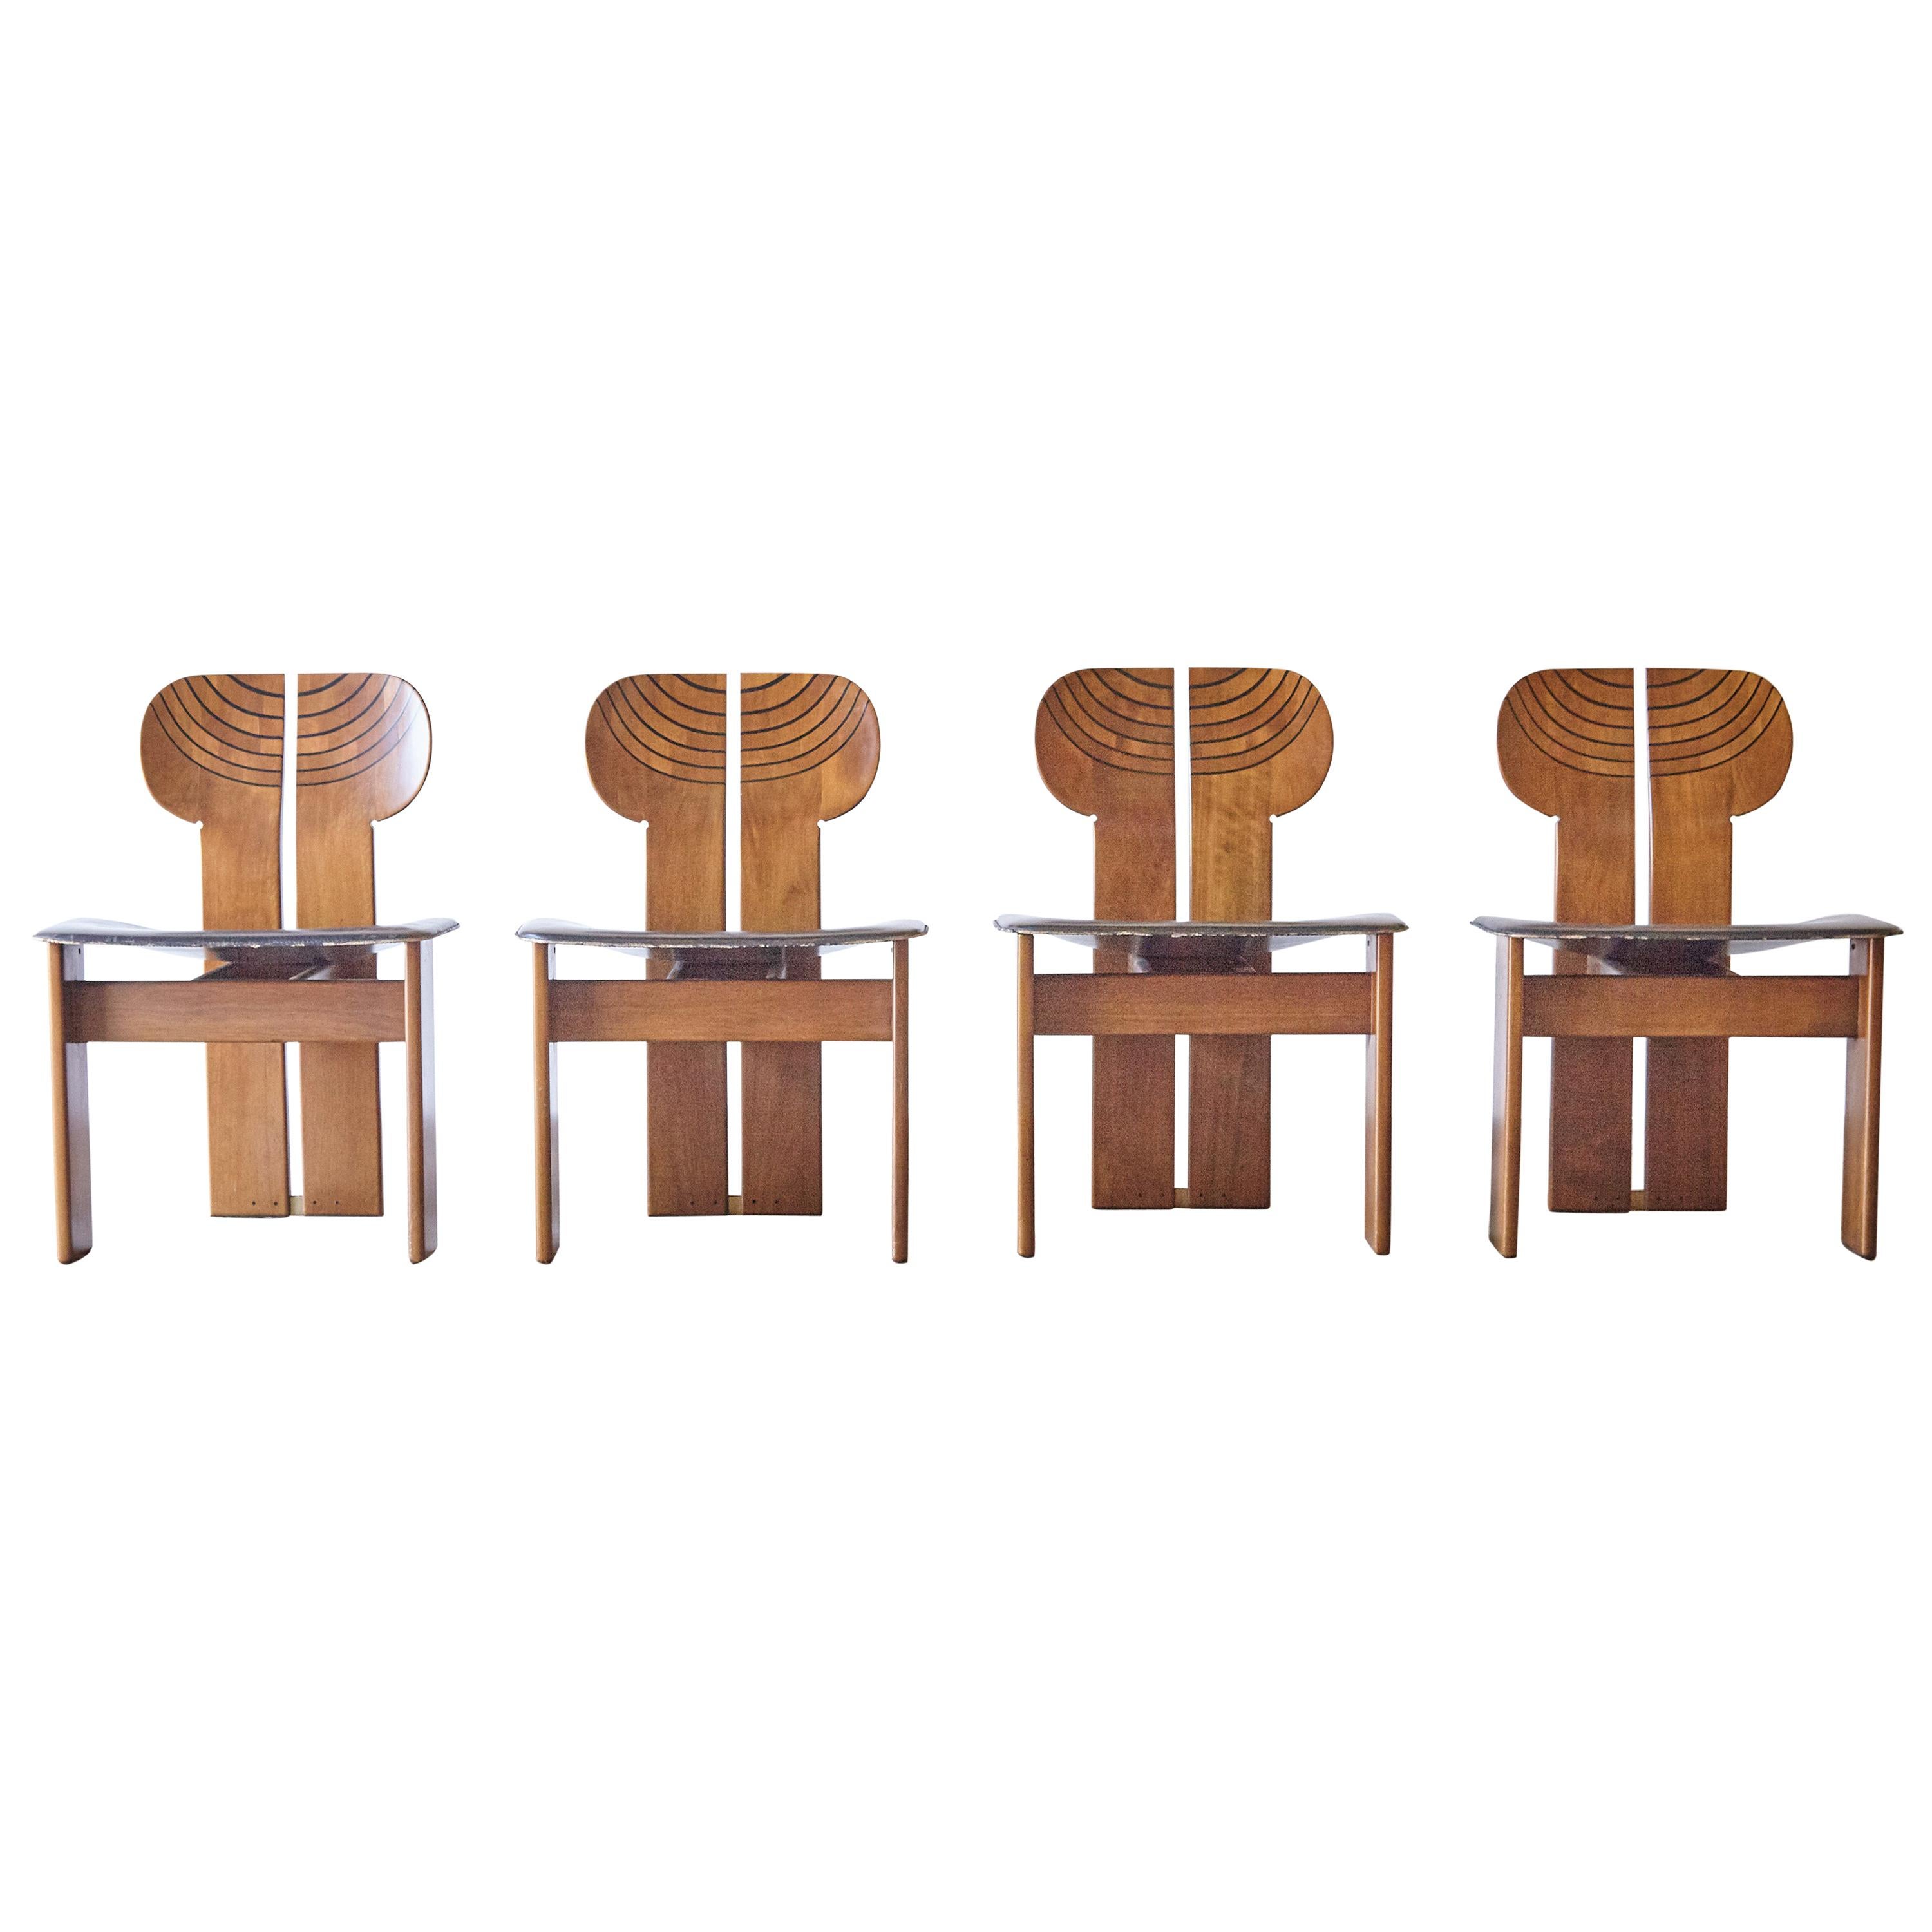 Set of 4 Africa Chairs, Afra & Tobia Scarpa, Maxalto Artona Series, Italy, 1970s